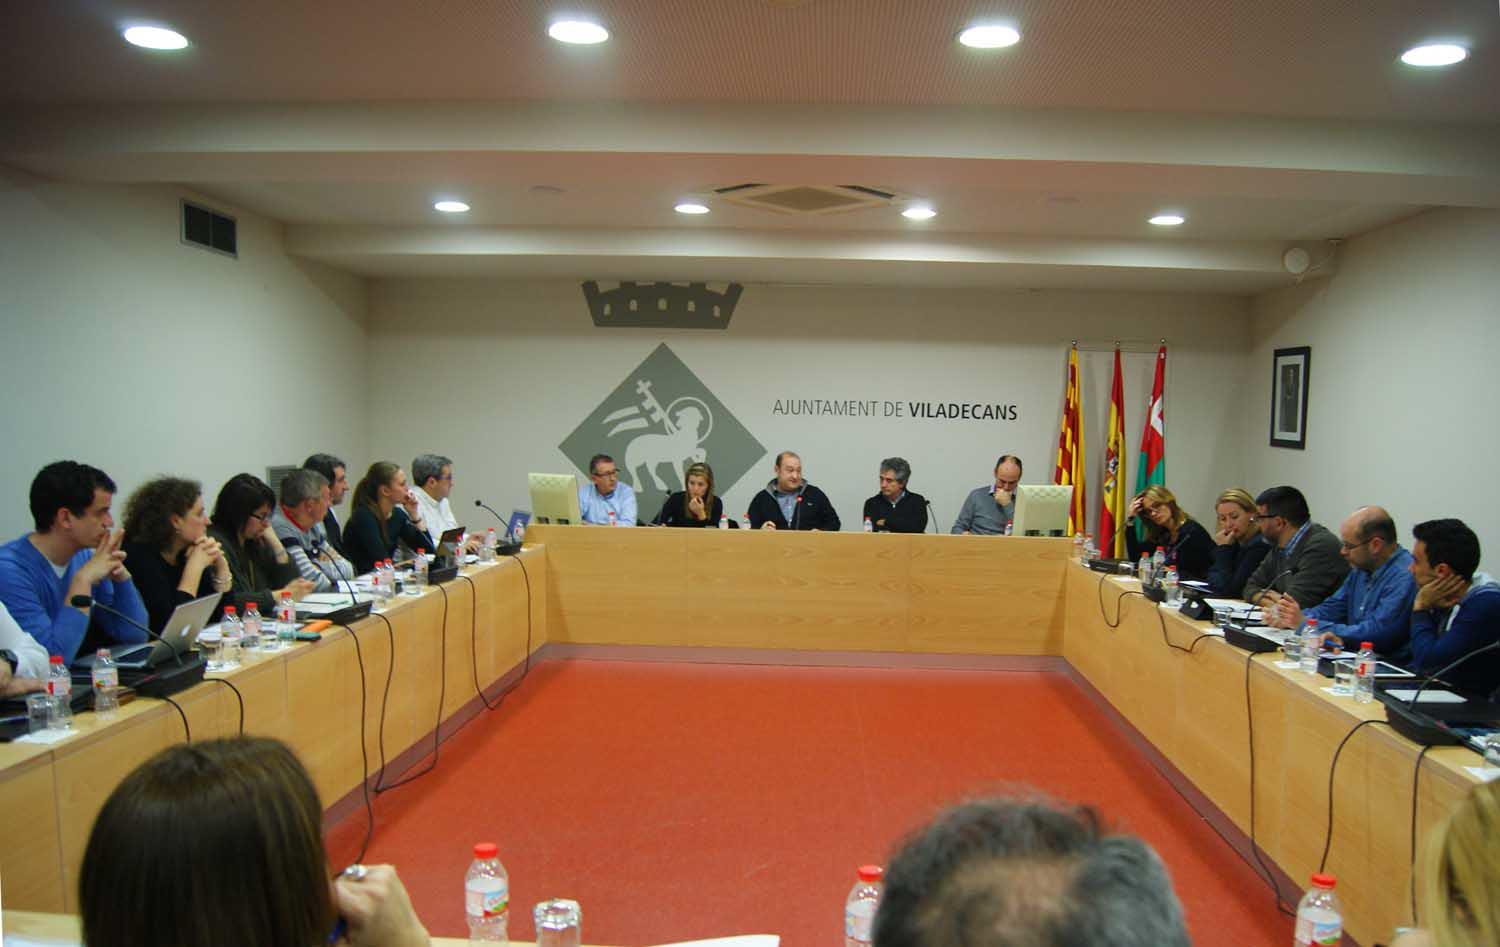 El PSC perd la seva primera votació a l'Ajuntament de Viladecans 